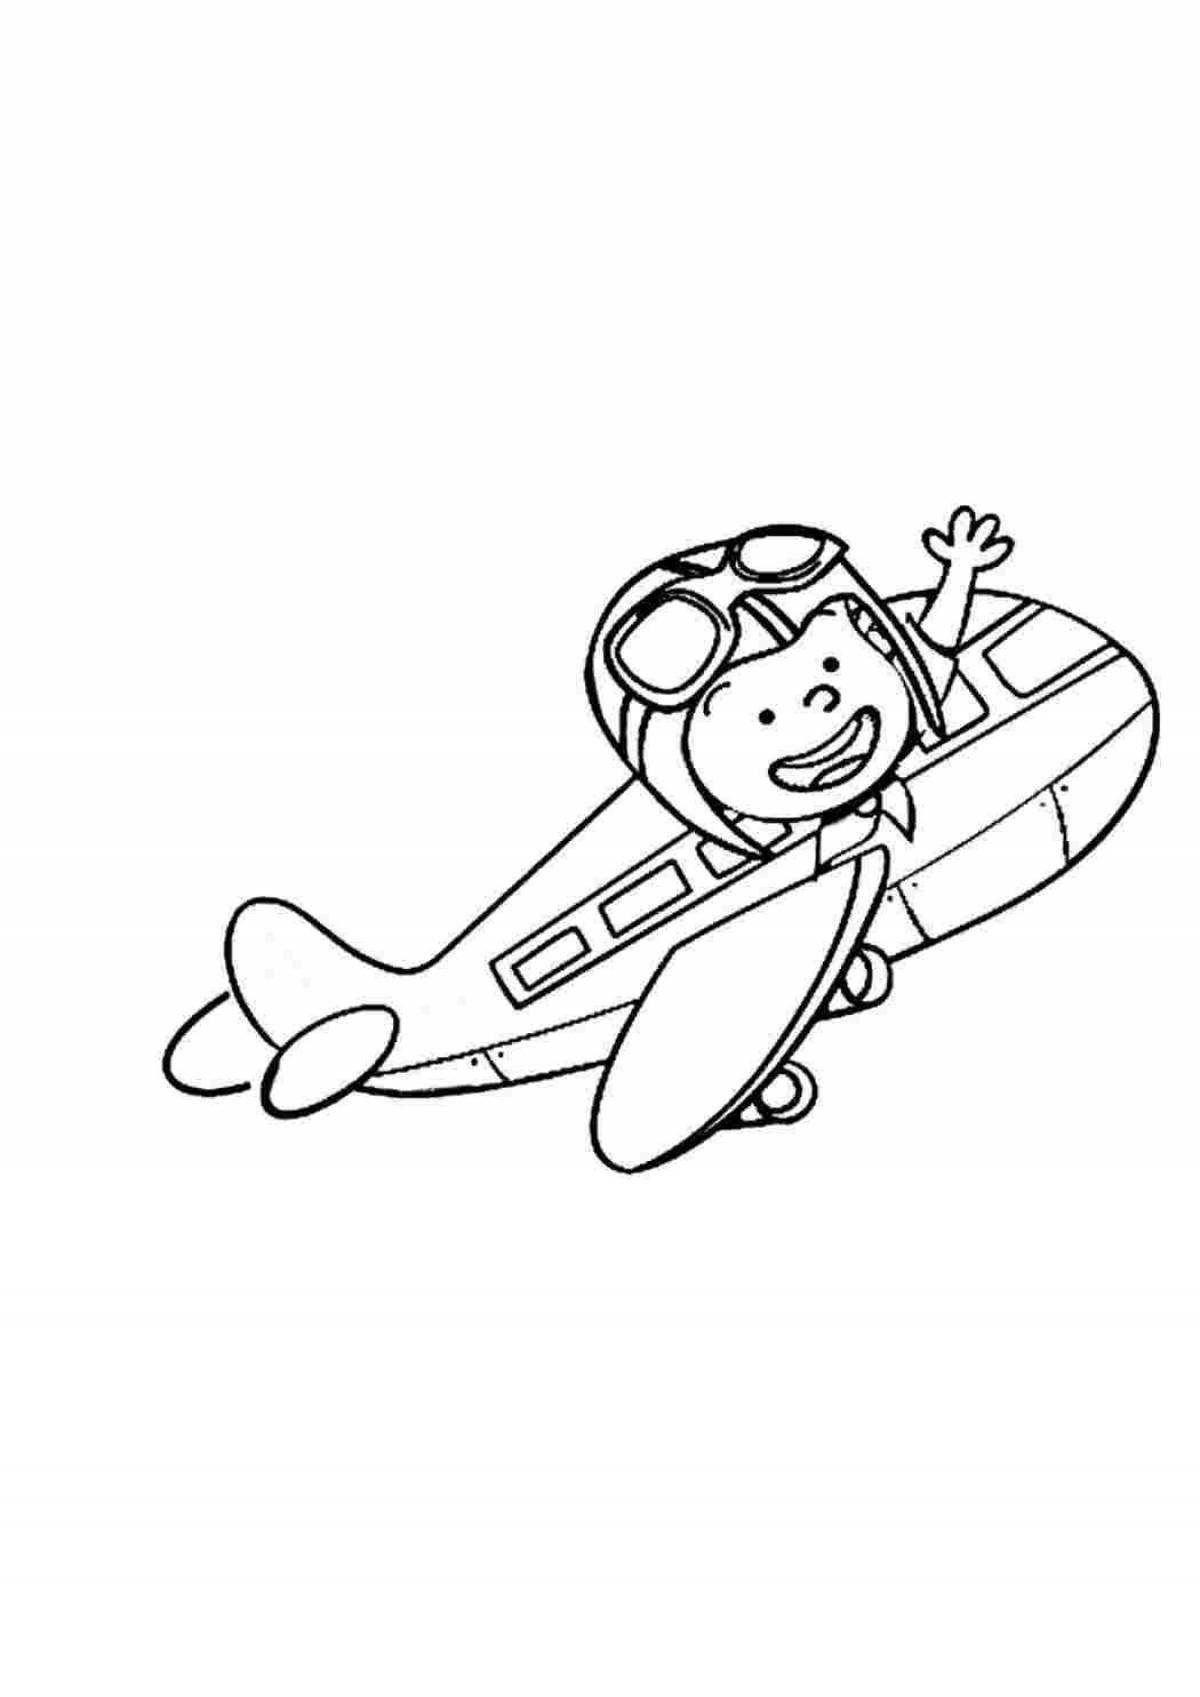 Dashing pilot coloring page